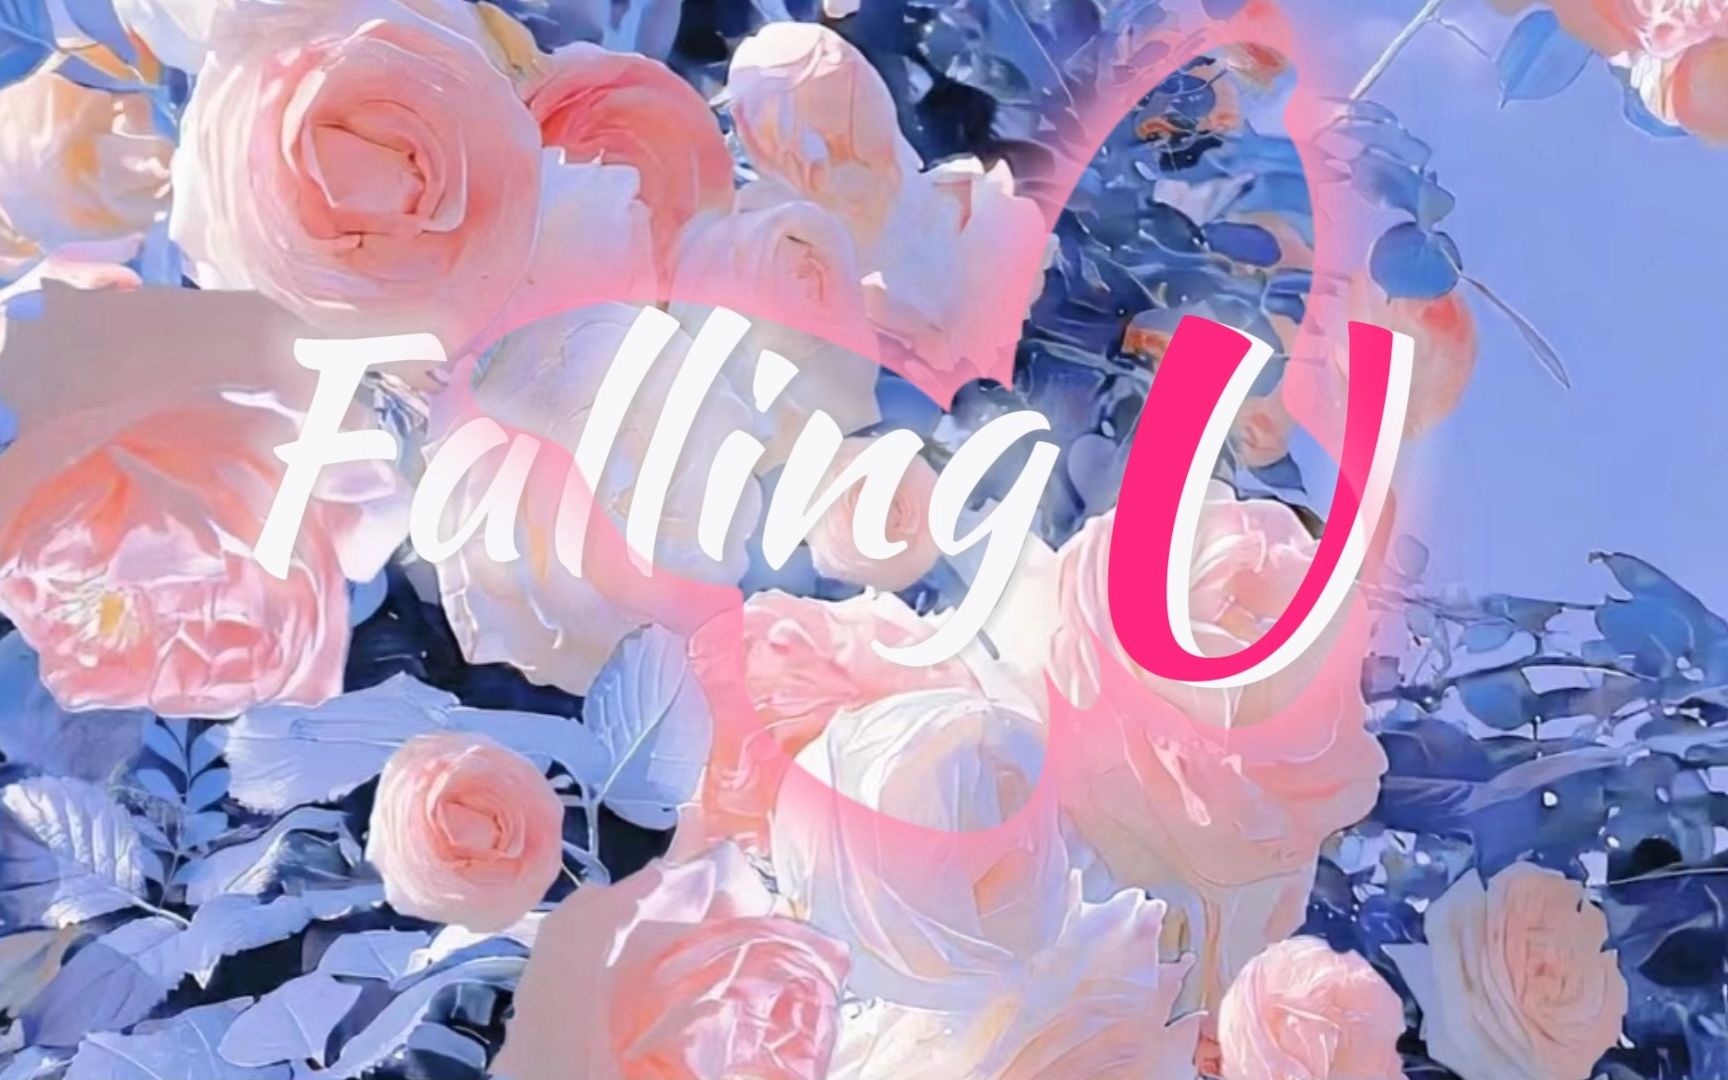 【动态歌词排版】Falling U|“非常非常爱你，无法摆脱”